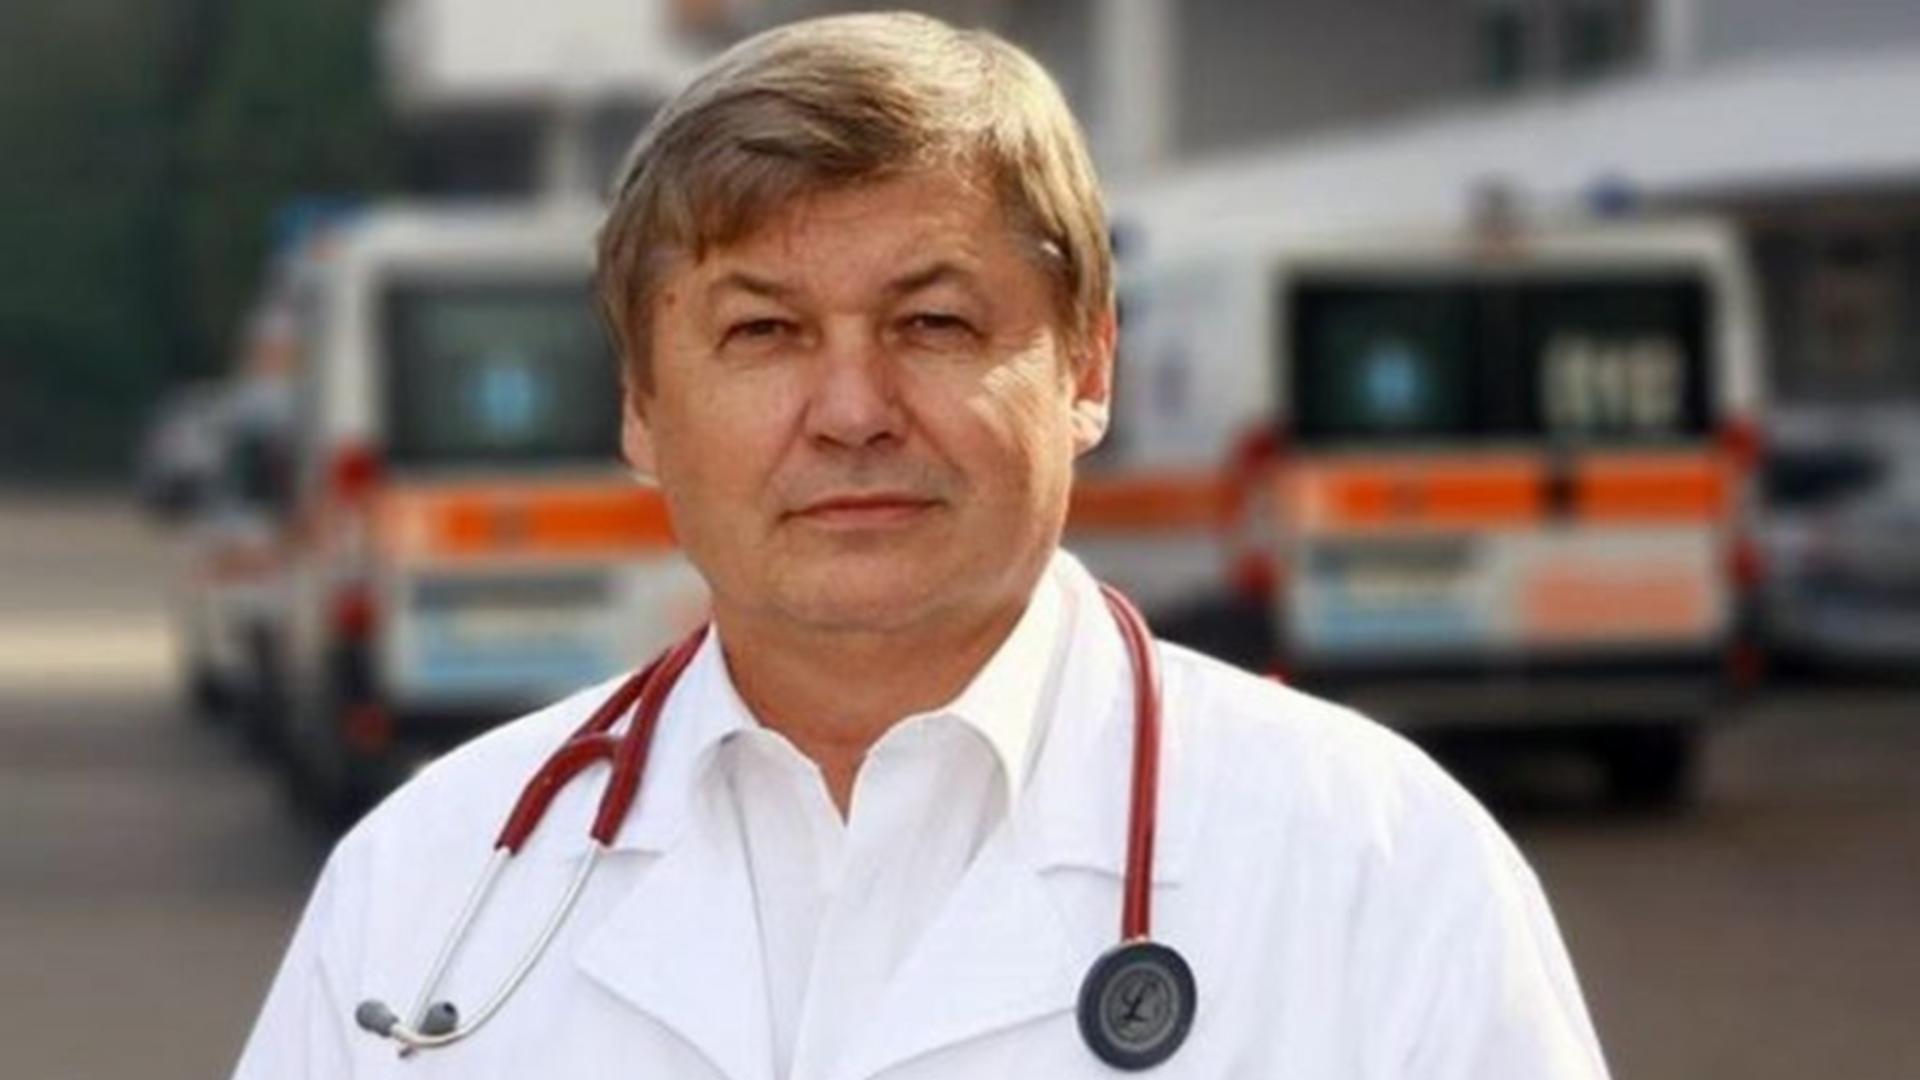 Benedek Imre, profesor doctor hematolog